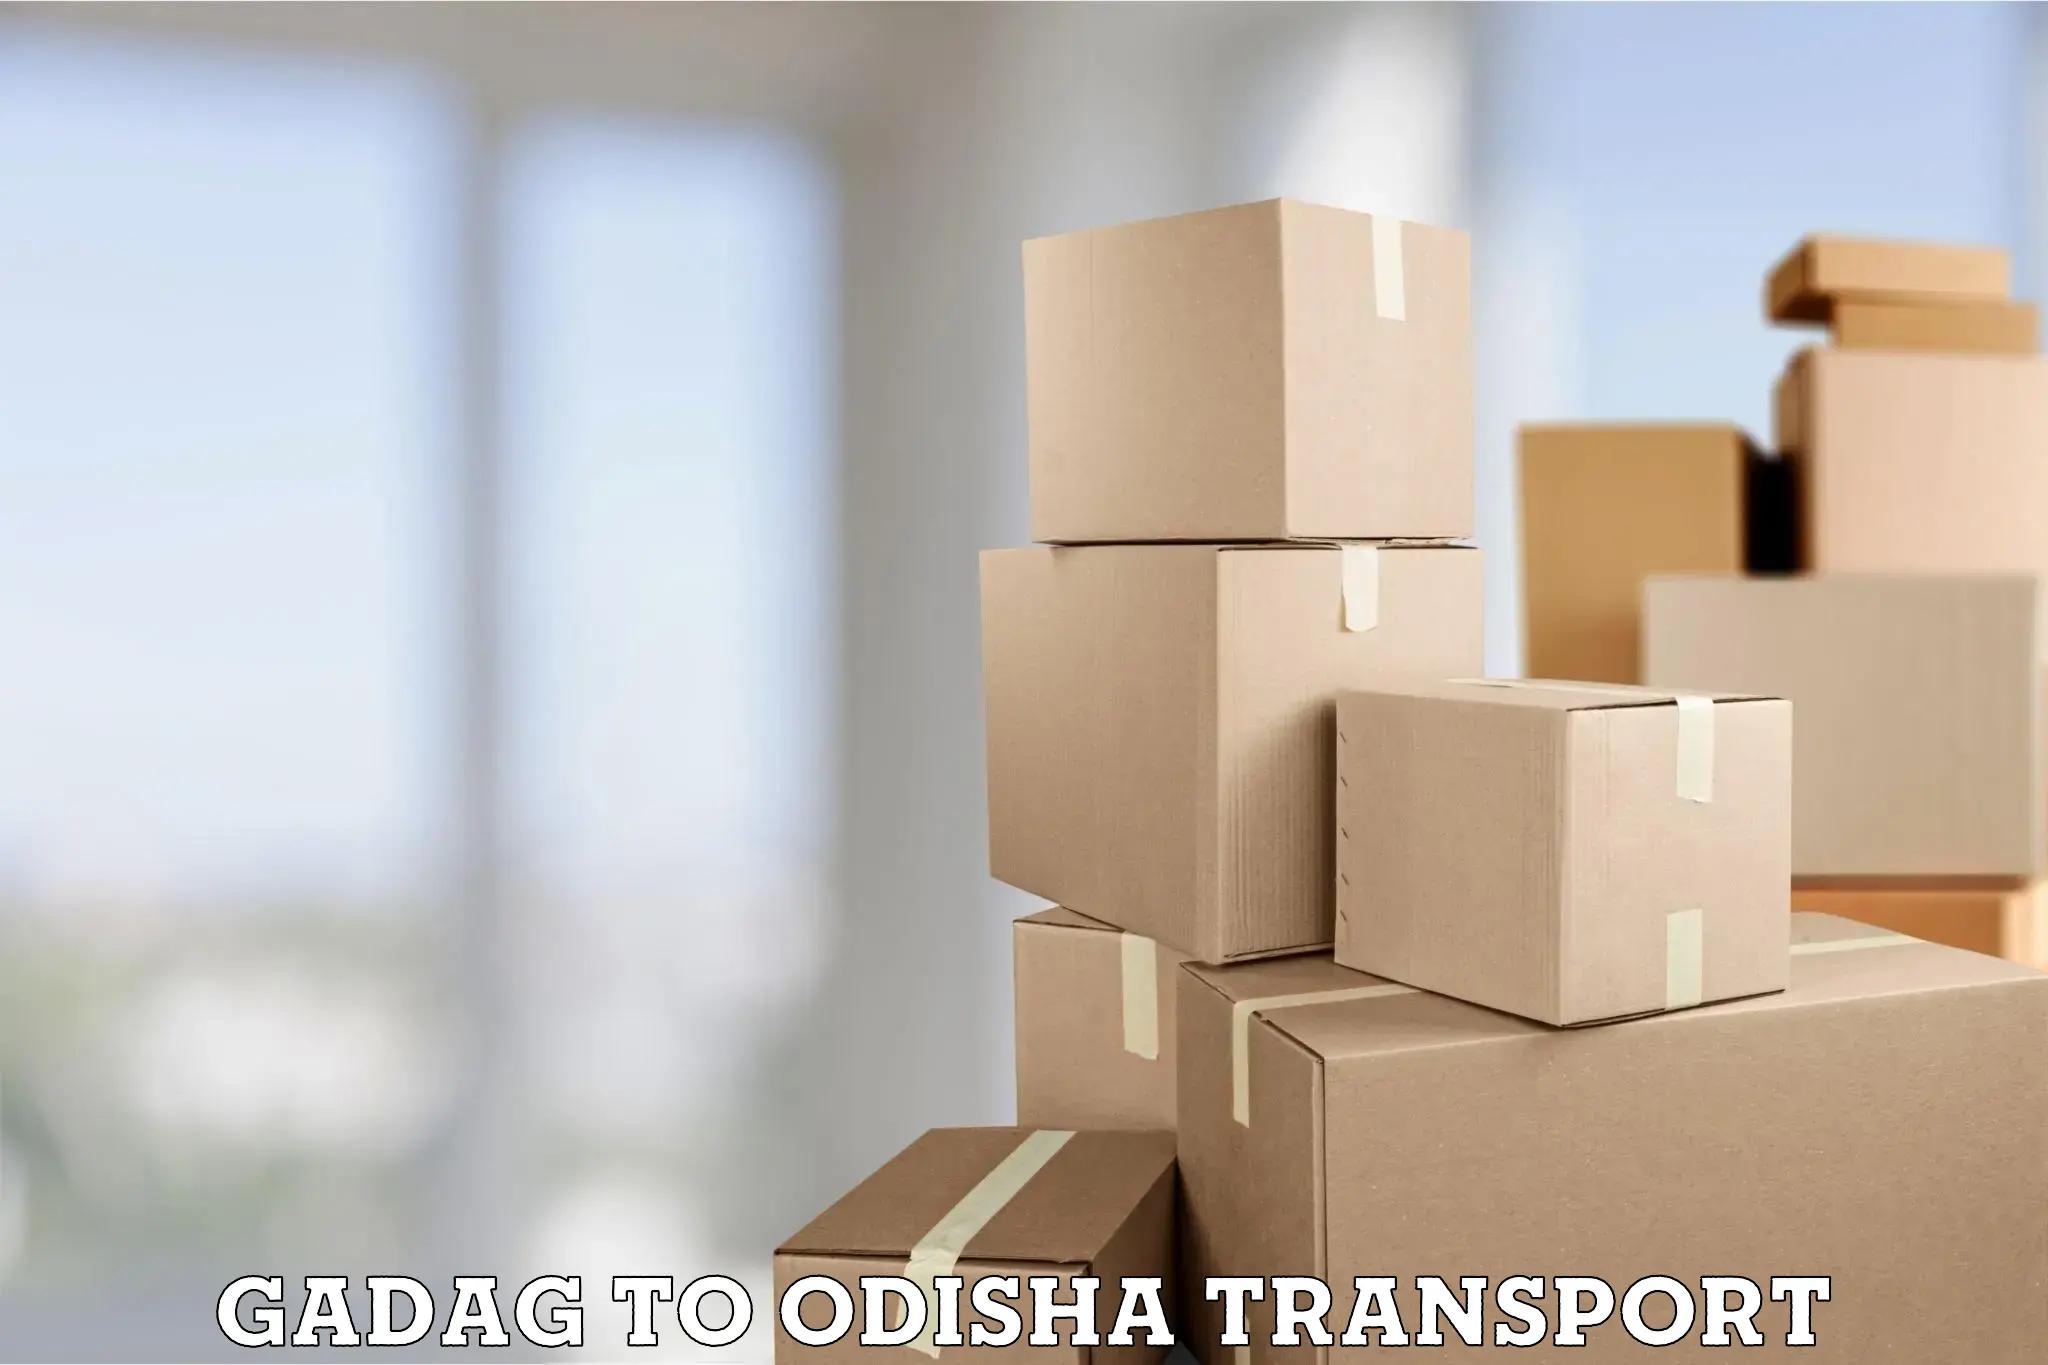 Online transport booking in Gadag to Daspalla